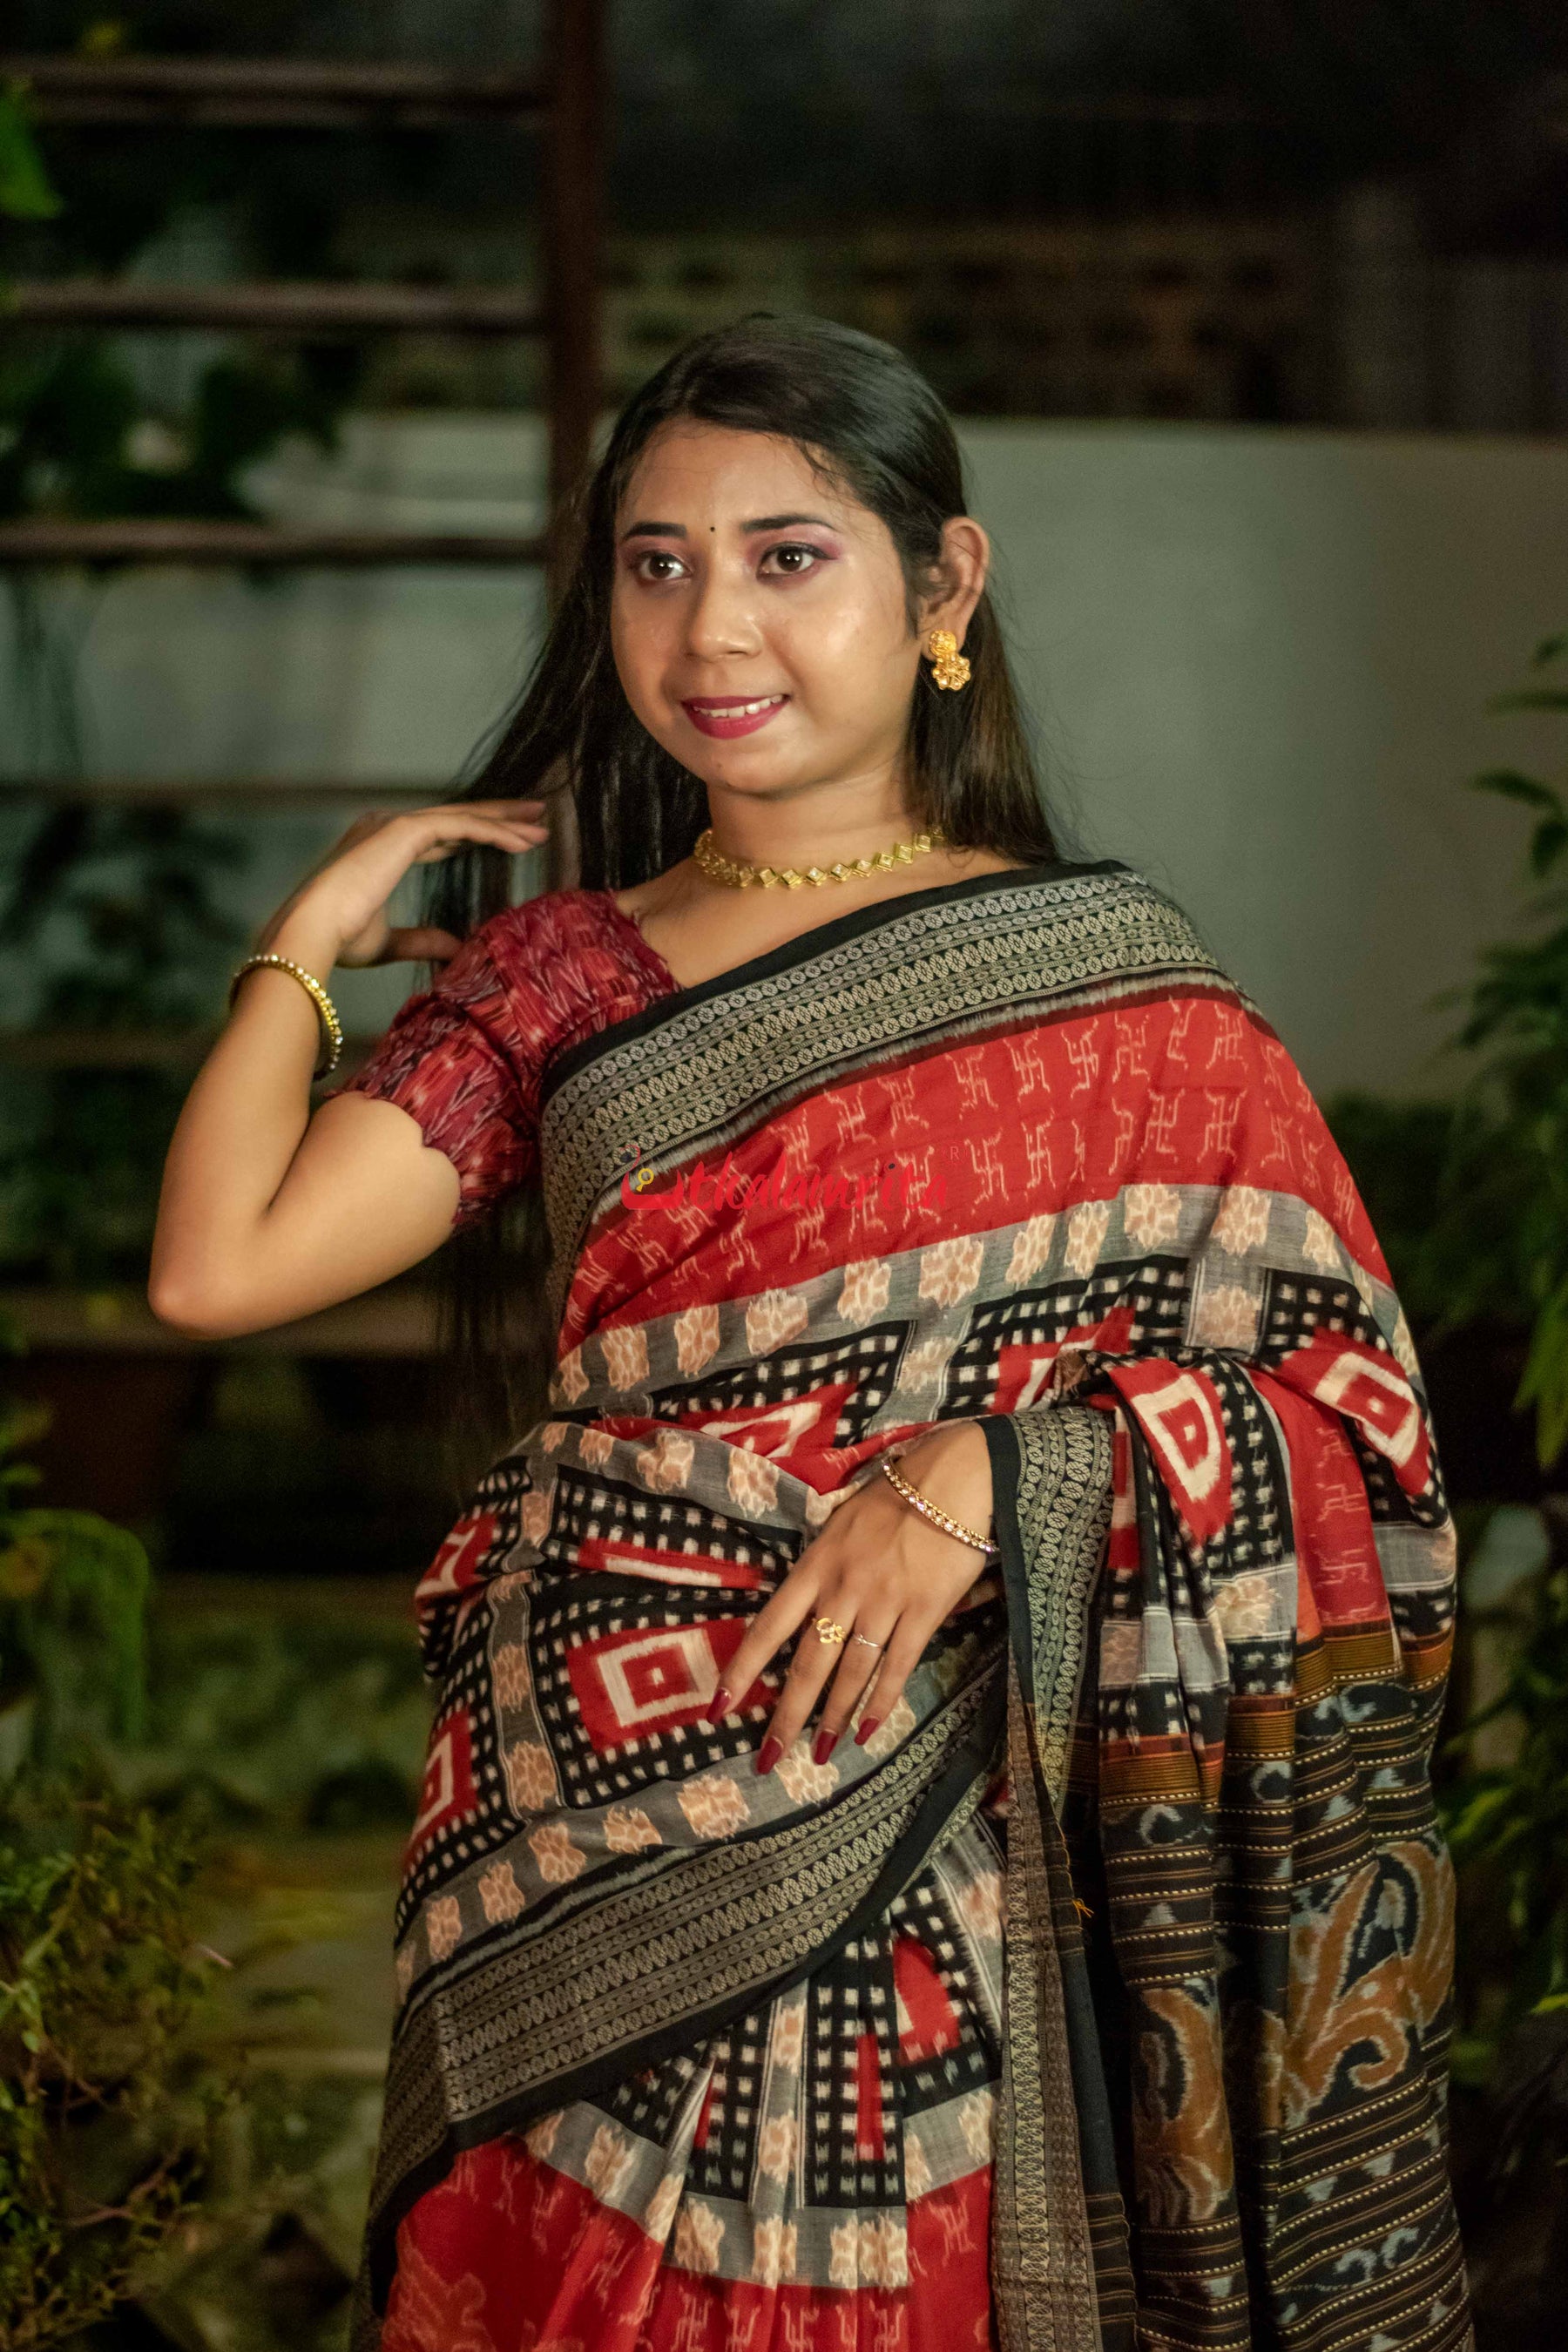 Swasthik Kuthi Pasapali Cotton saree